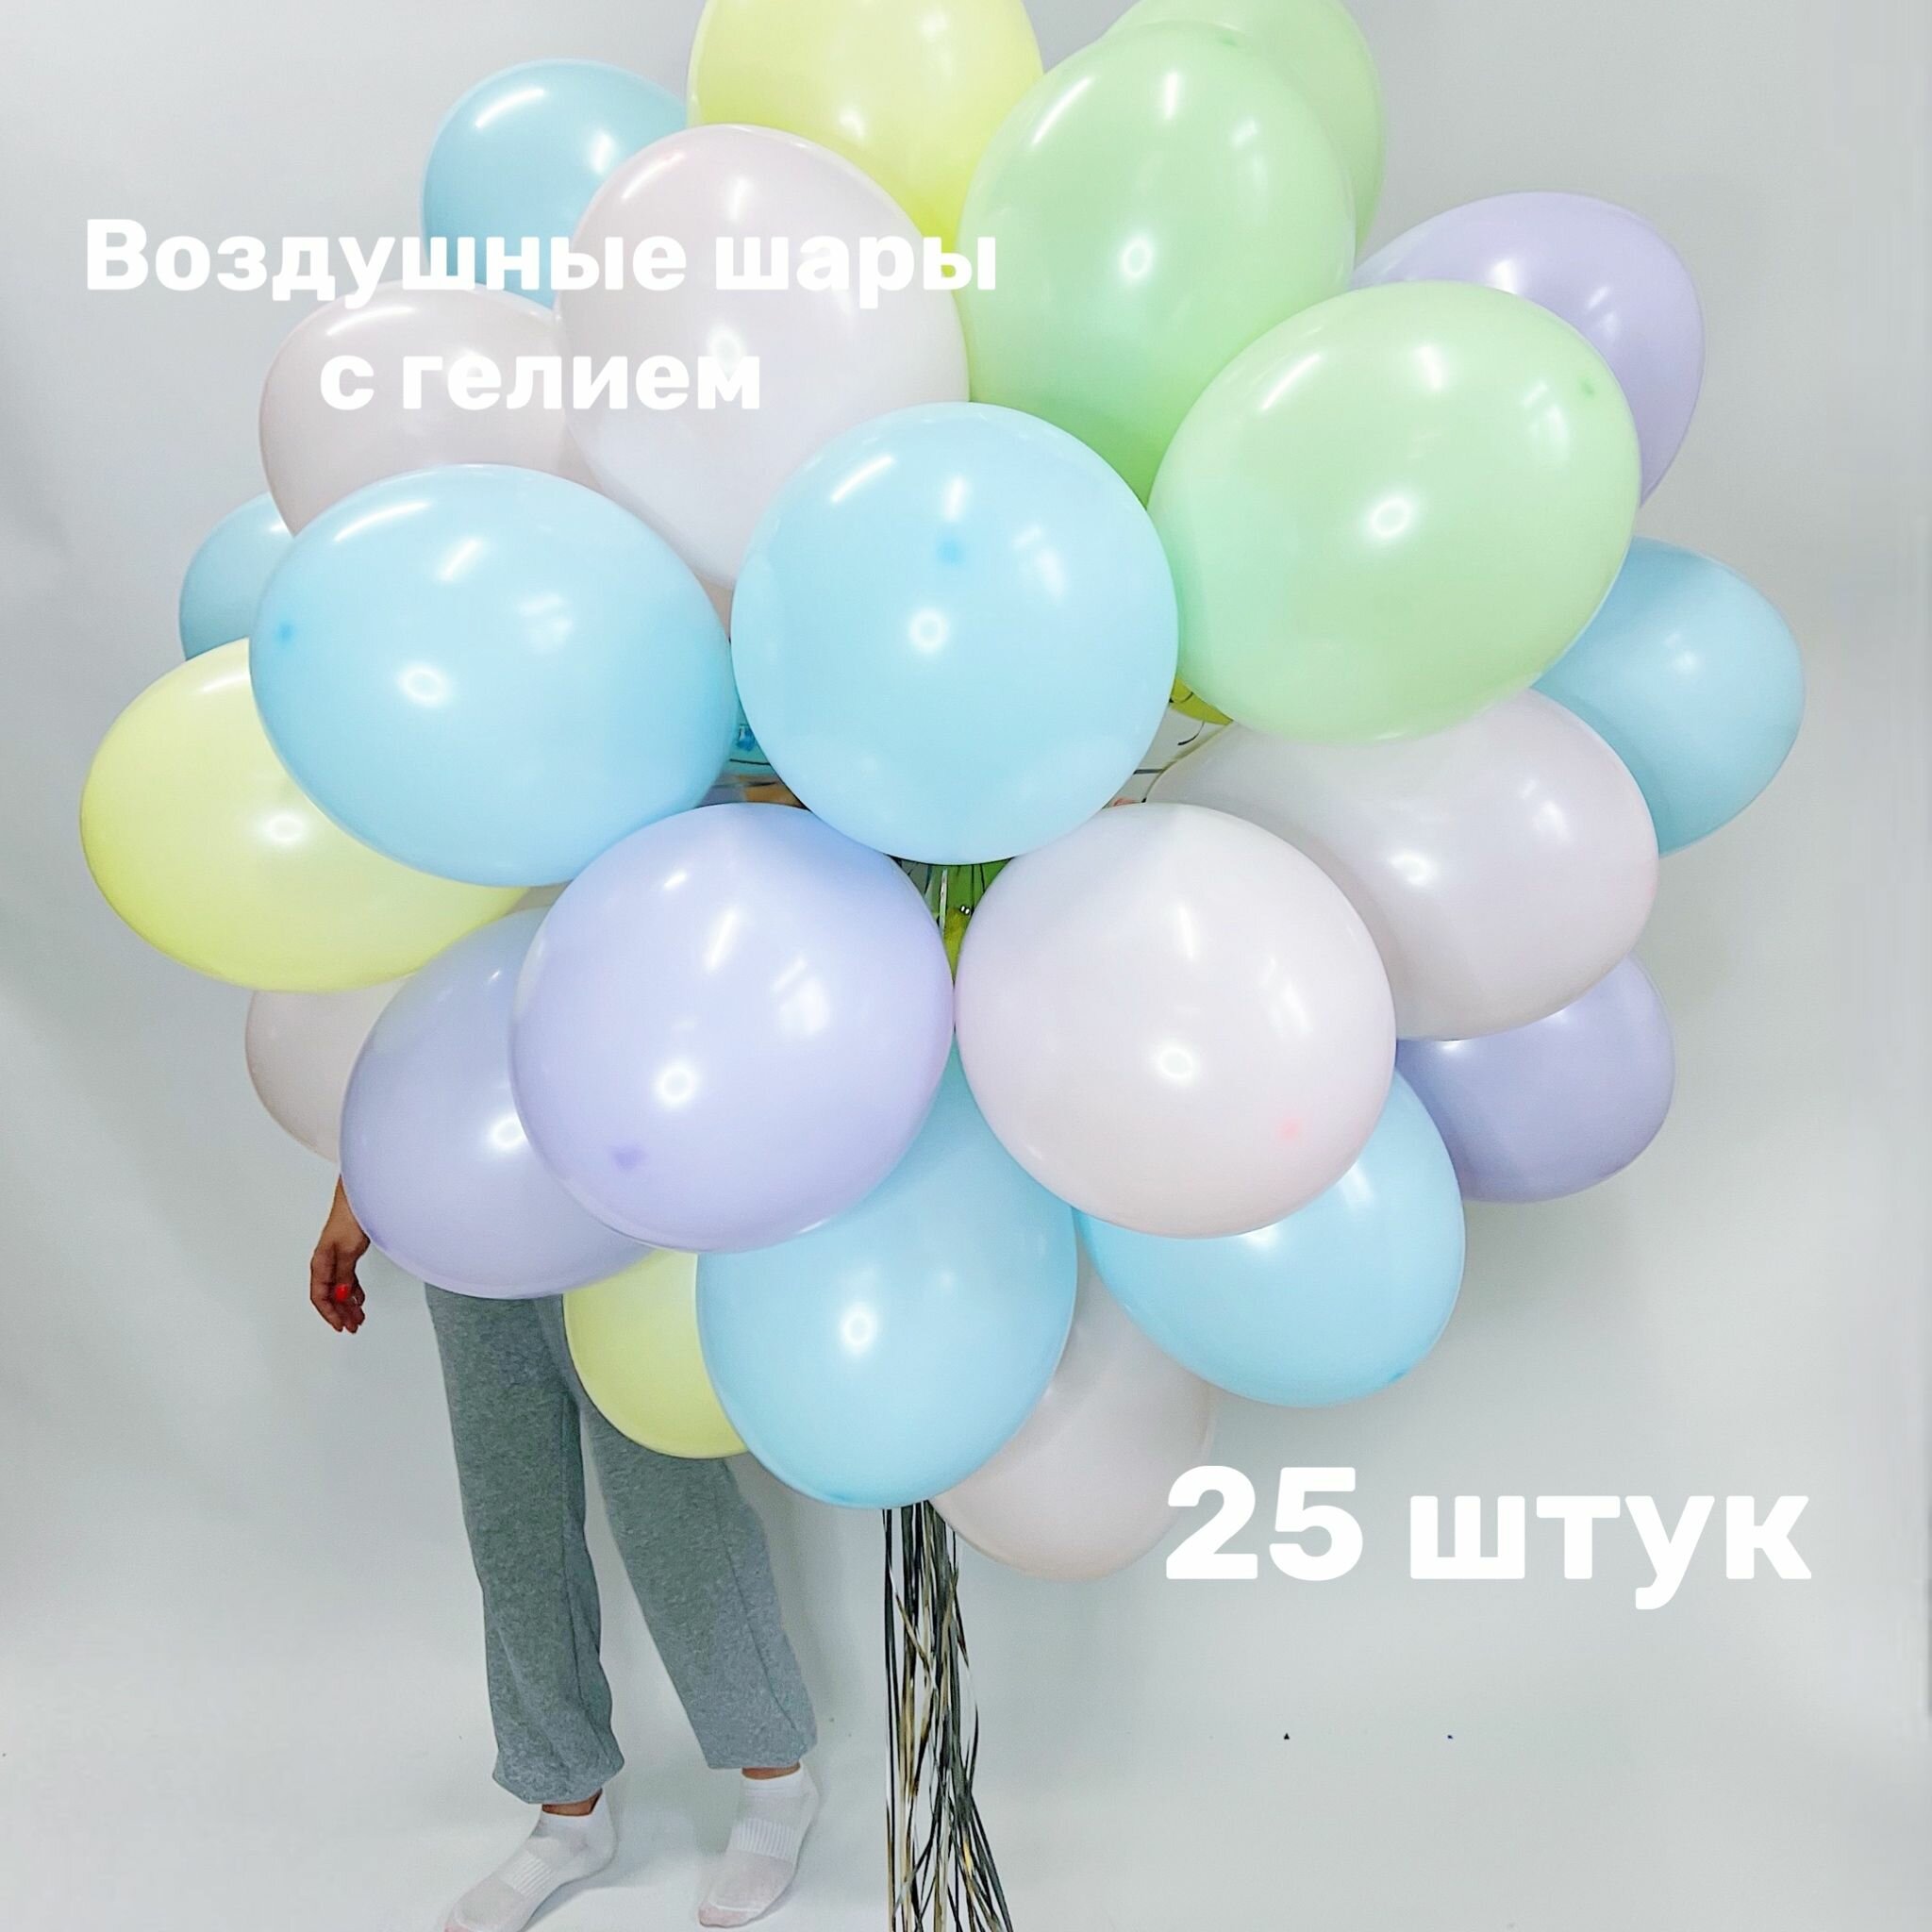 Воздушные шары надутые гелием, Шары Макарунс, 25 шаров